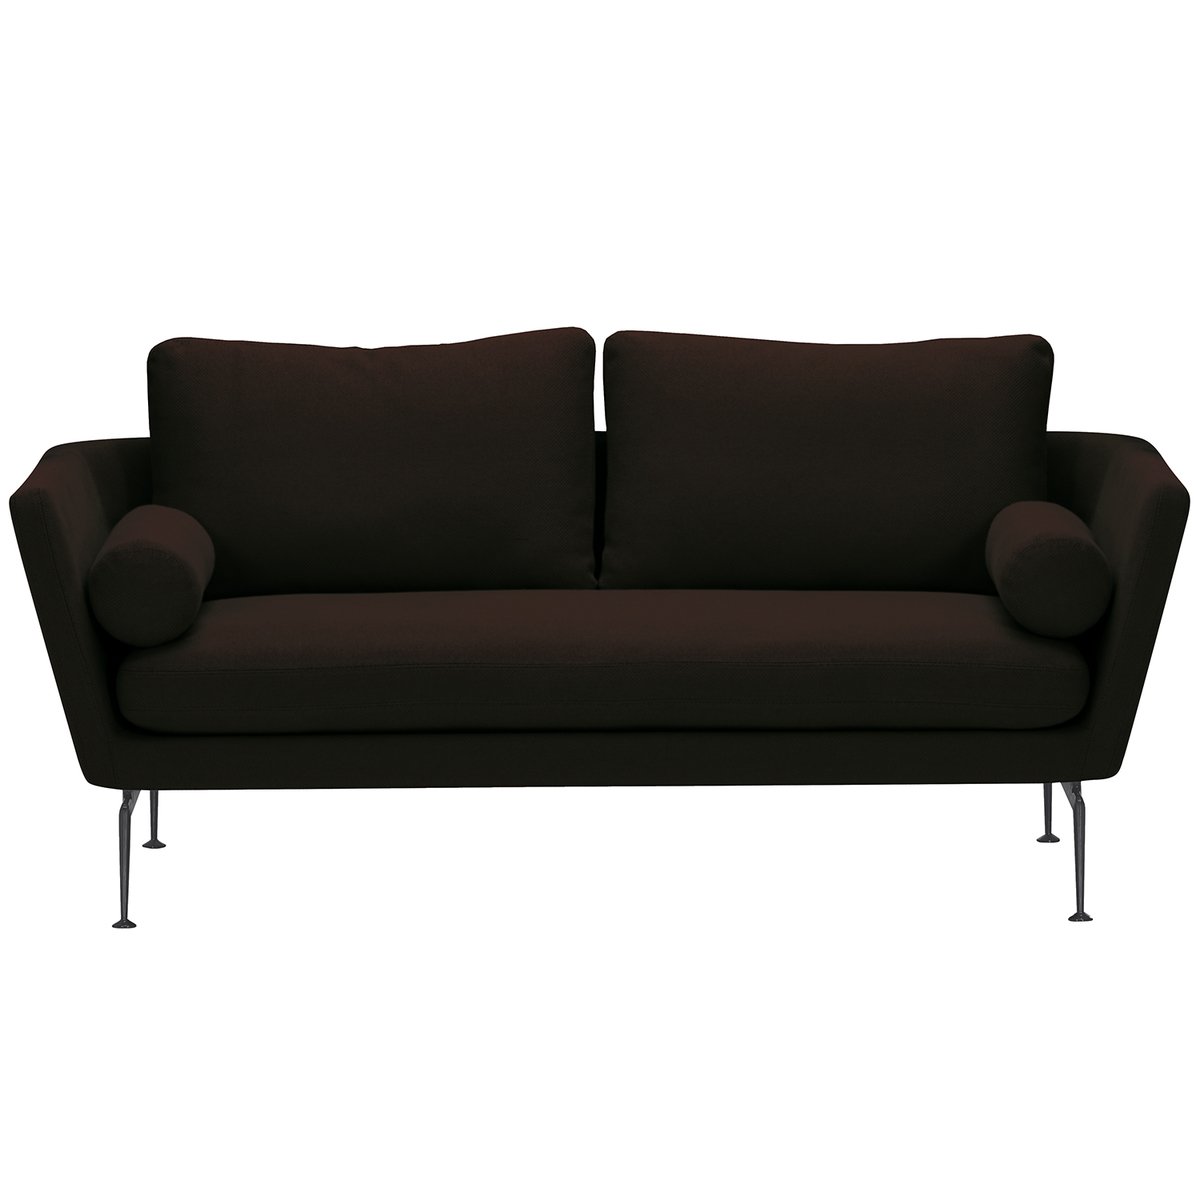 Vitra Suita sohva, 2-istuttava, basic dark - musta/ruskea